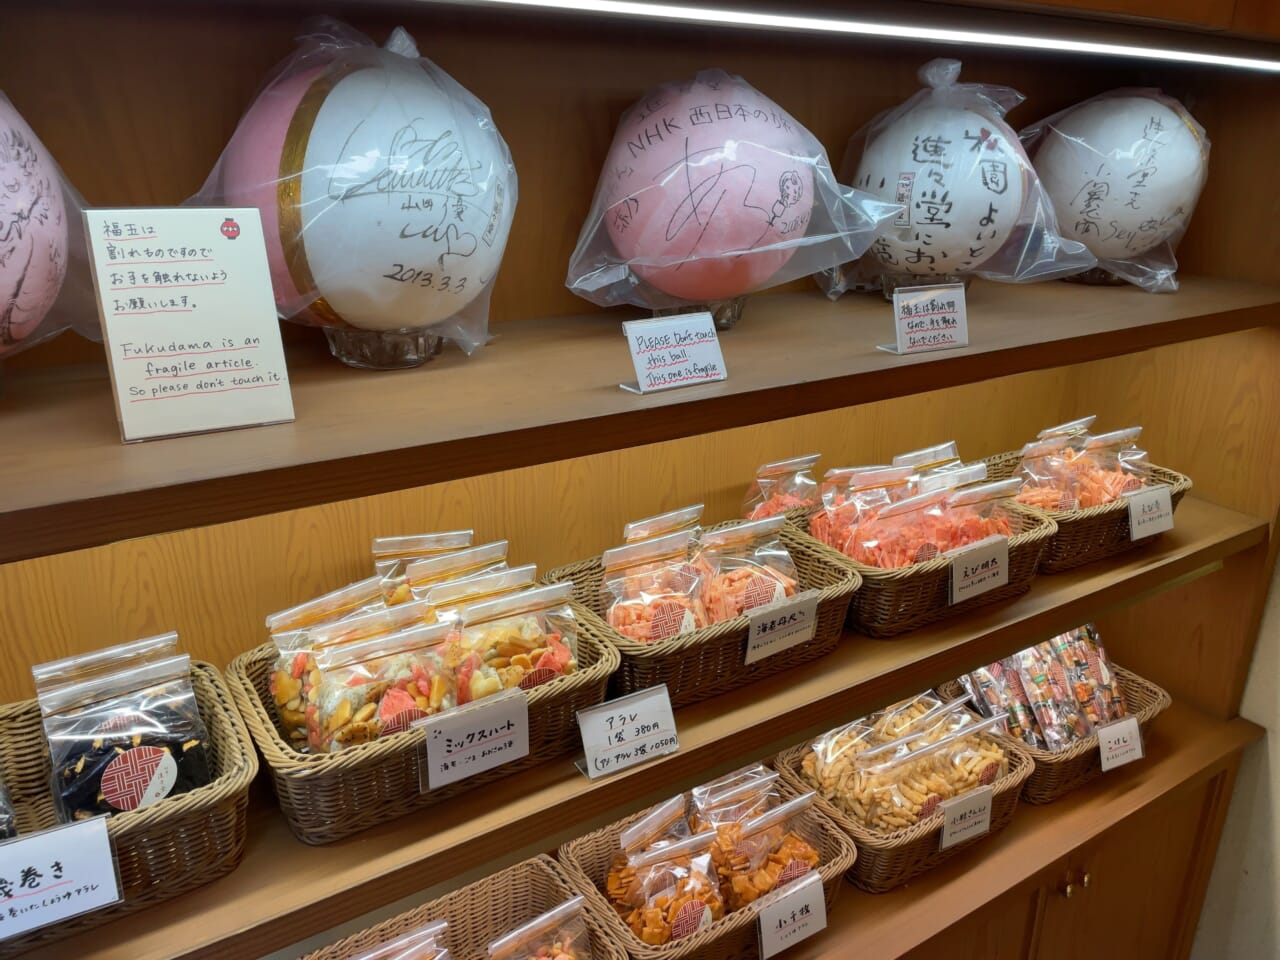 京都の随一の観光地、祇園の名喫茶店で味わう「玉子サンド」と「玉子